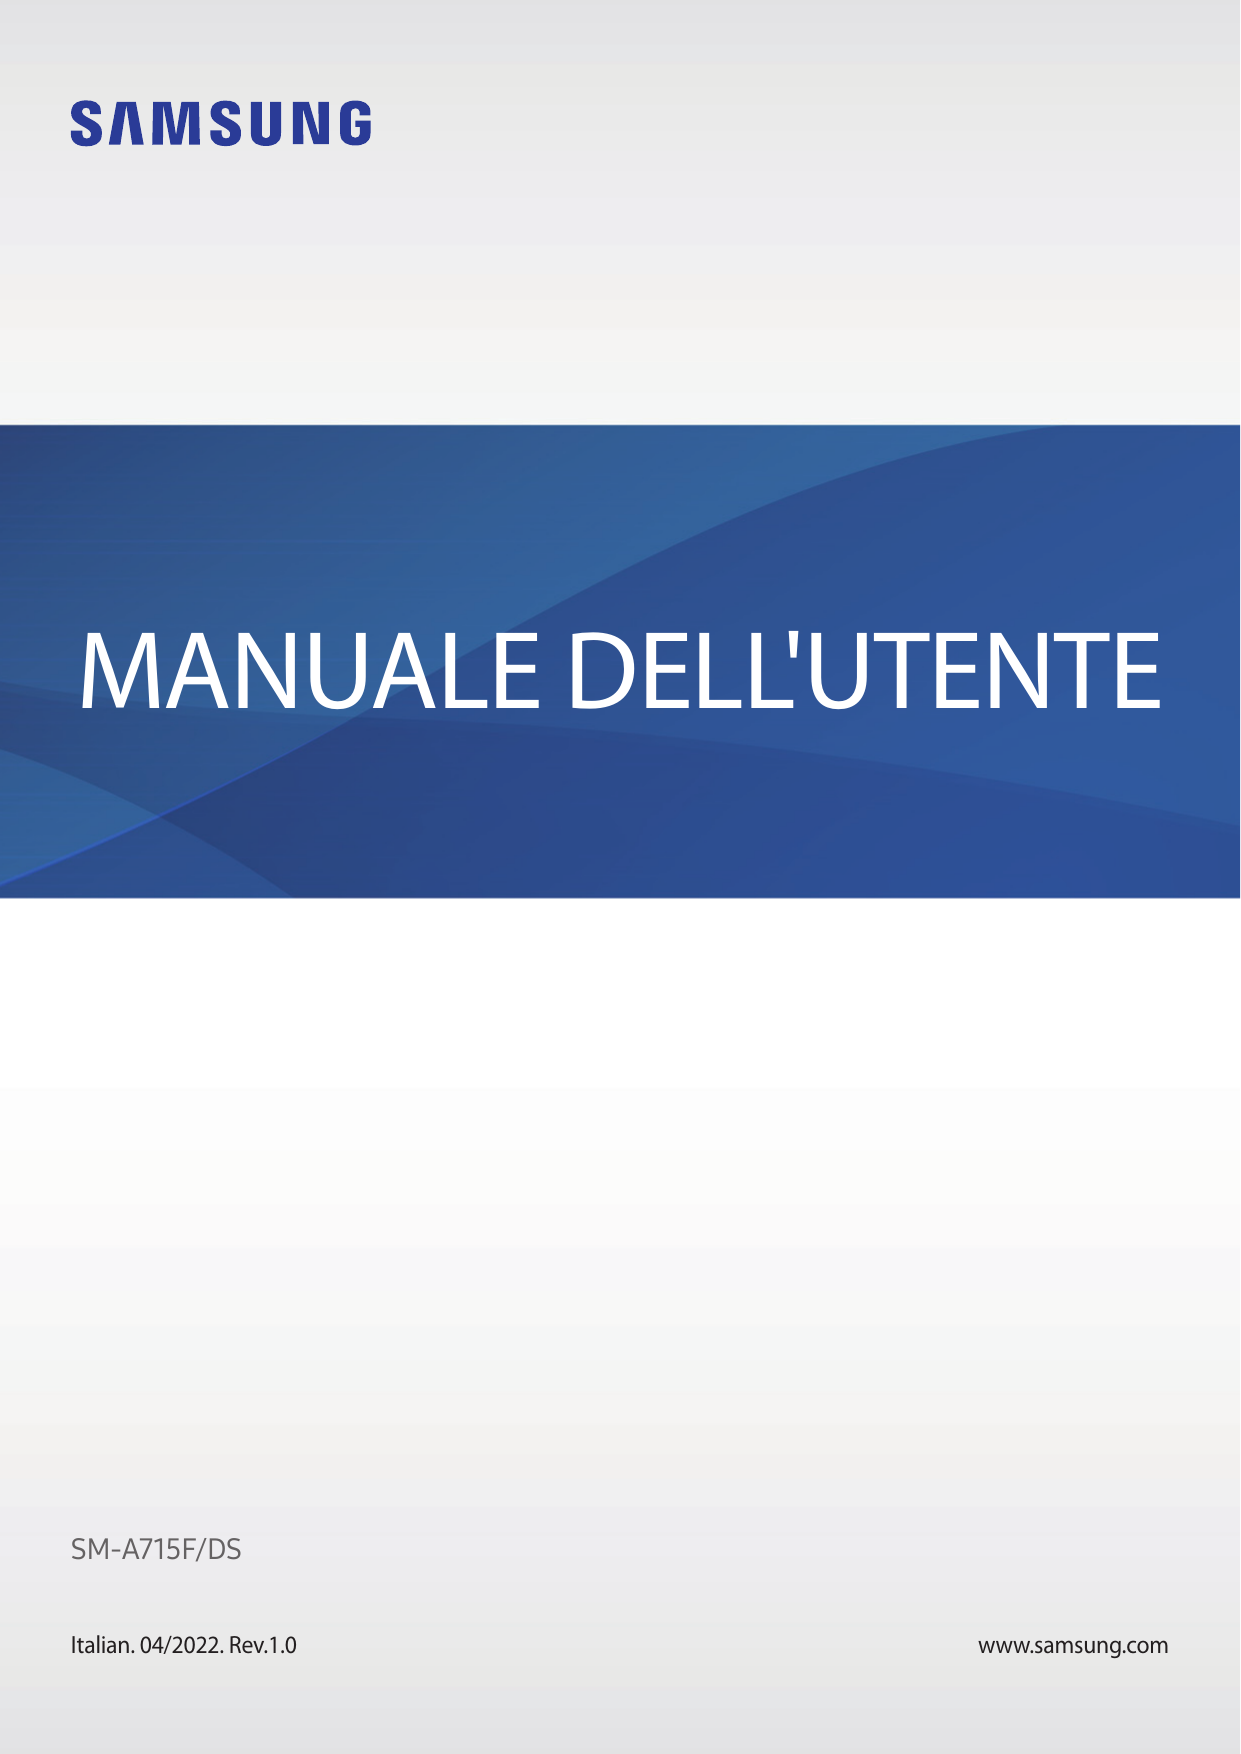 MANUALE DELL'UTENTESM-A715F/DSItalian. 04/2022. Rev.1.0www.samsung.com